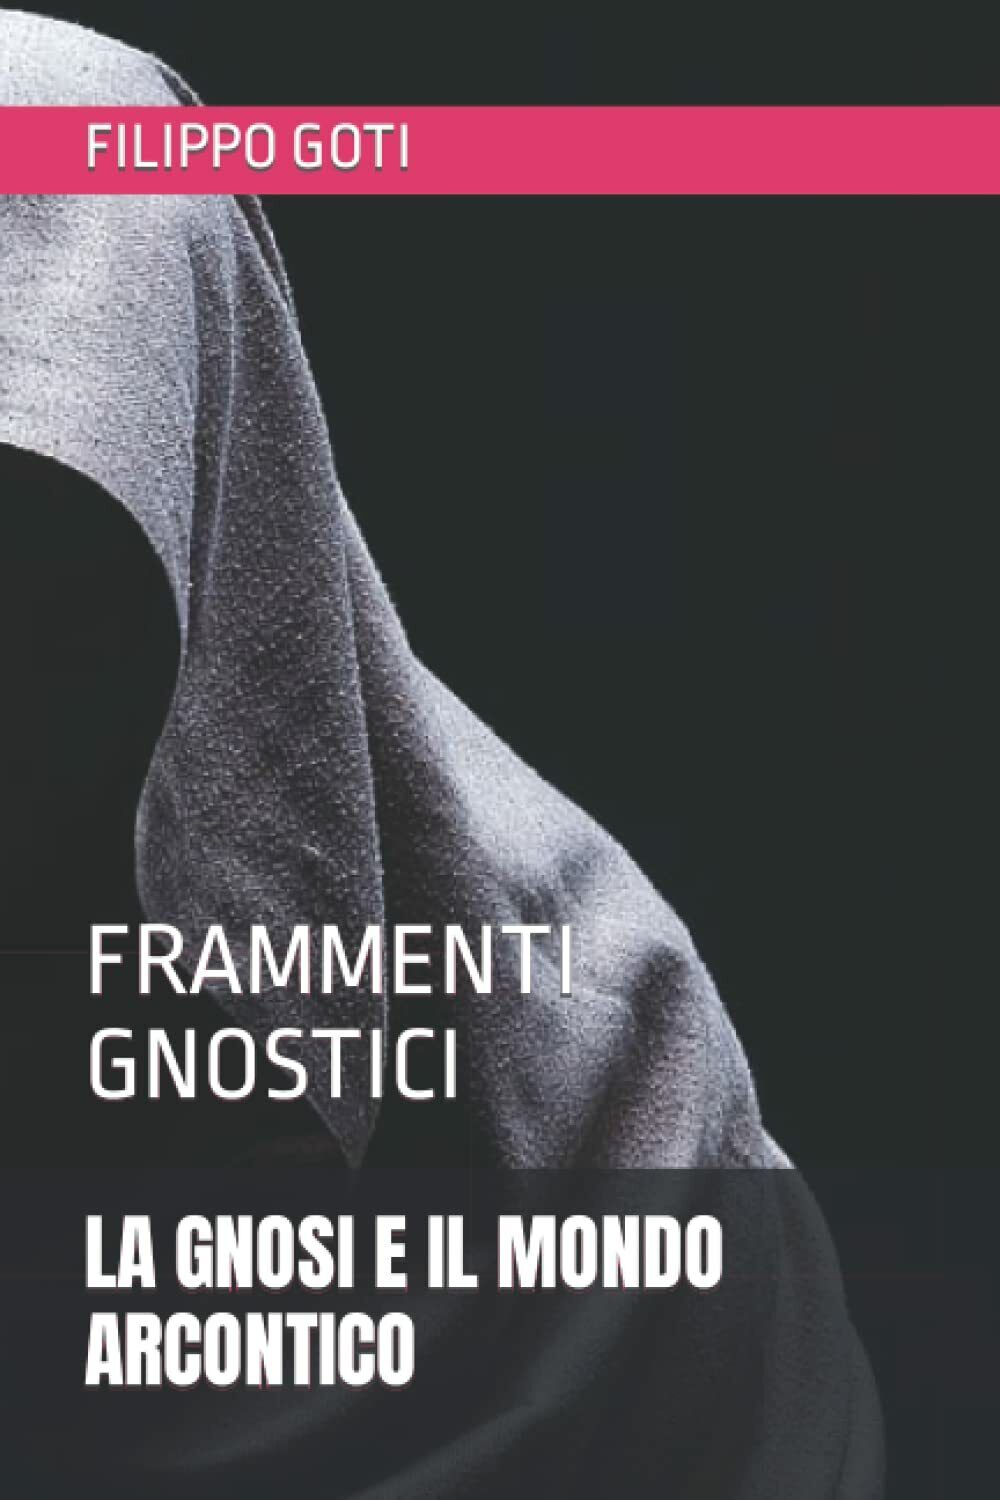 La Gnosi E Il Mondo Arcontico Frammenti Gnostici di Filippo Goti,  2020,  Indipe